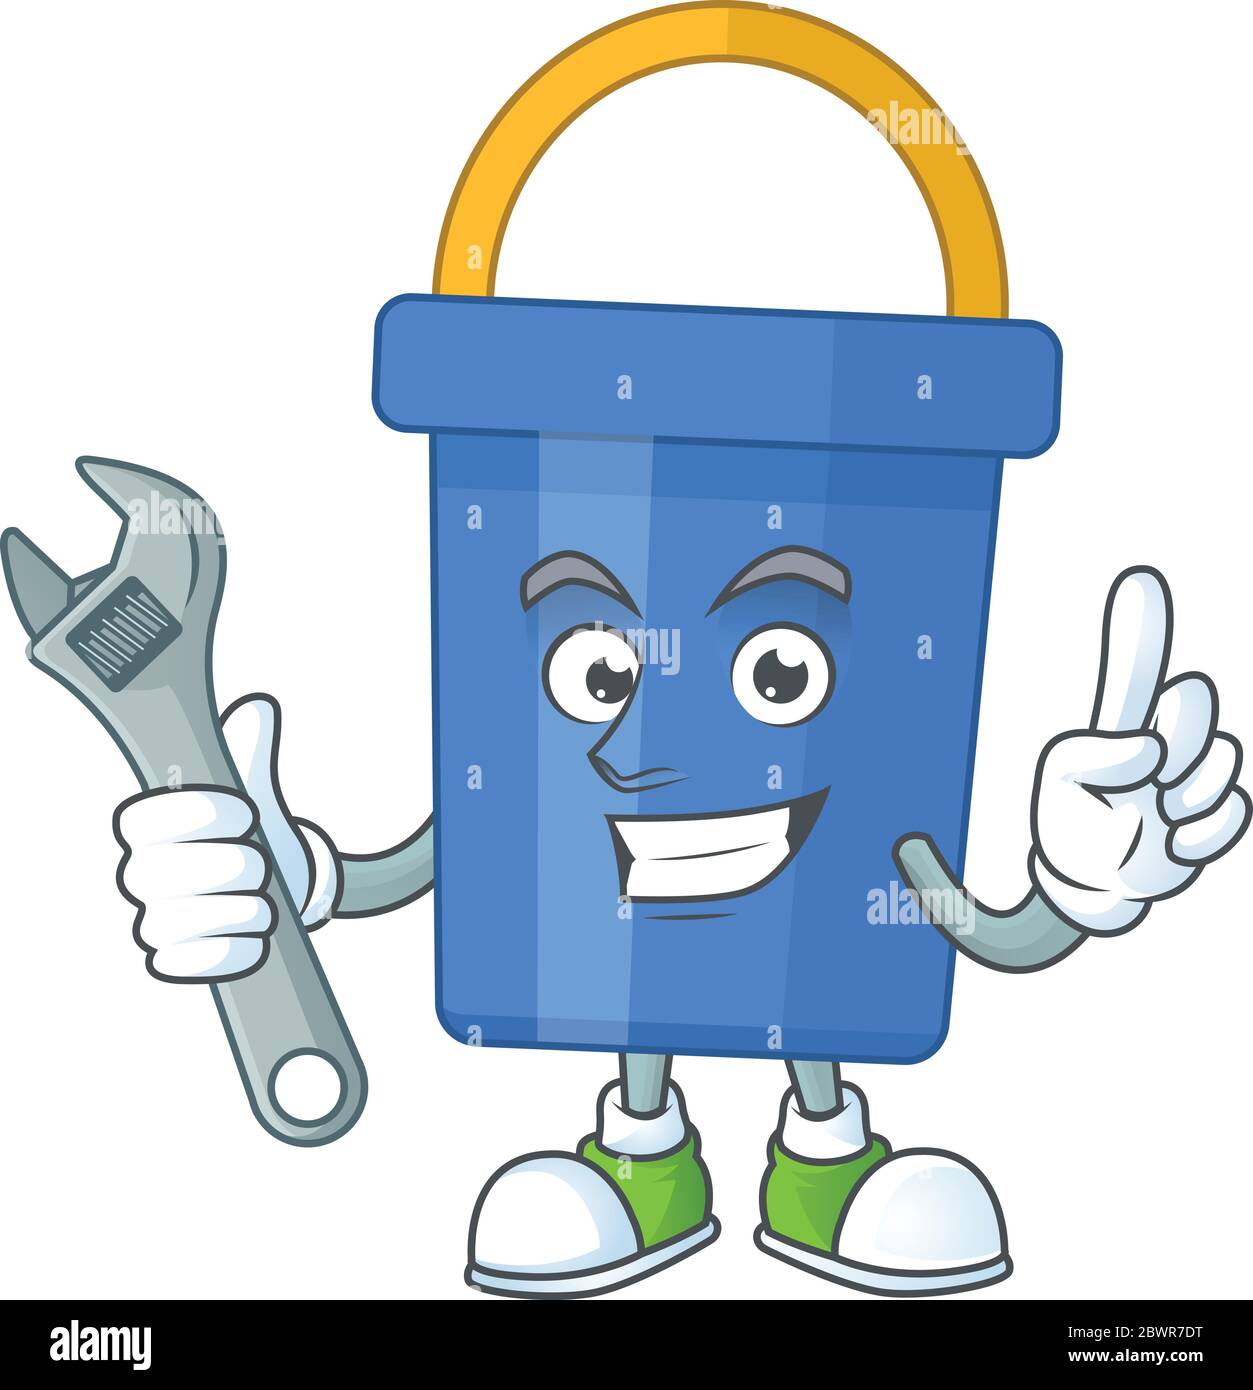 A smart mechanic blue sand bucket cartoon mascot design fix a broken machine Stock Vector